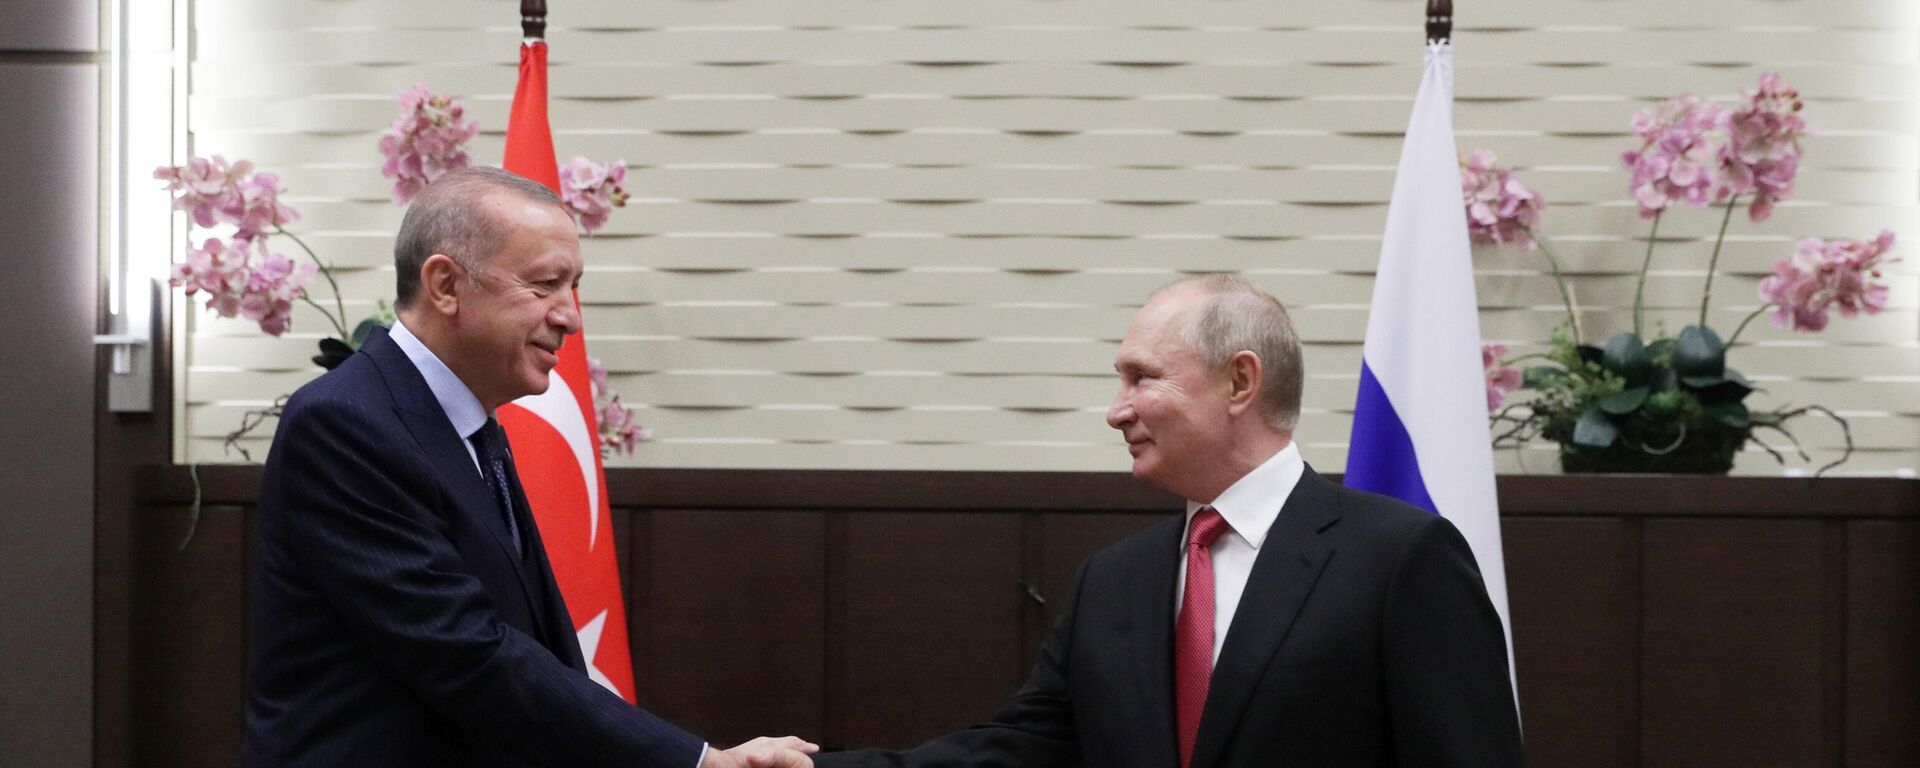 „Односи Русије и Турске се позитивно развијају“: Почео састанак Путина и Ердогана у Сочију - Sputnik Србија, 1920, 29.09.2021